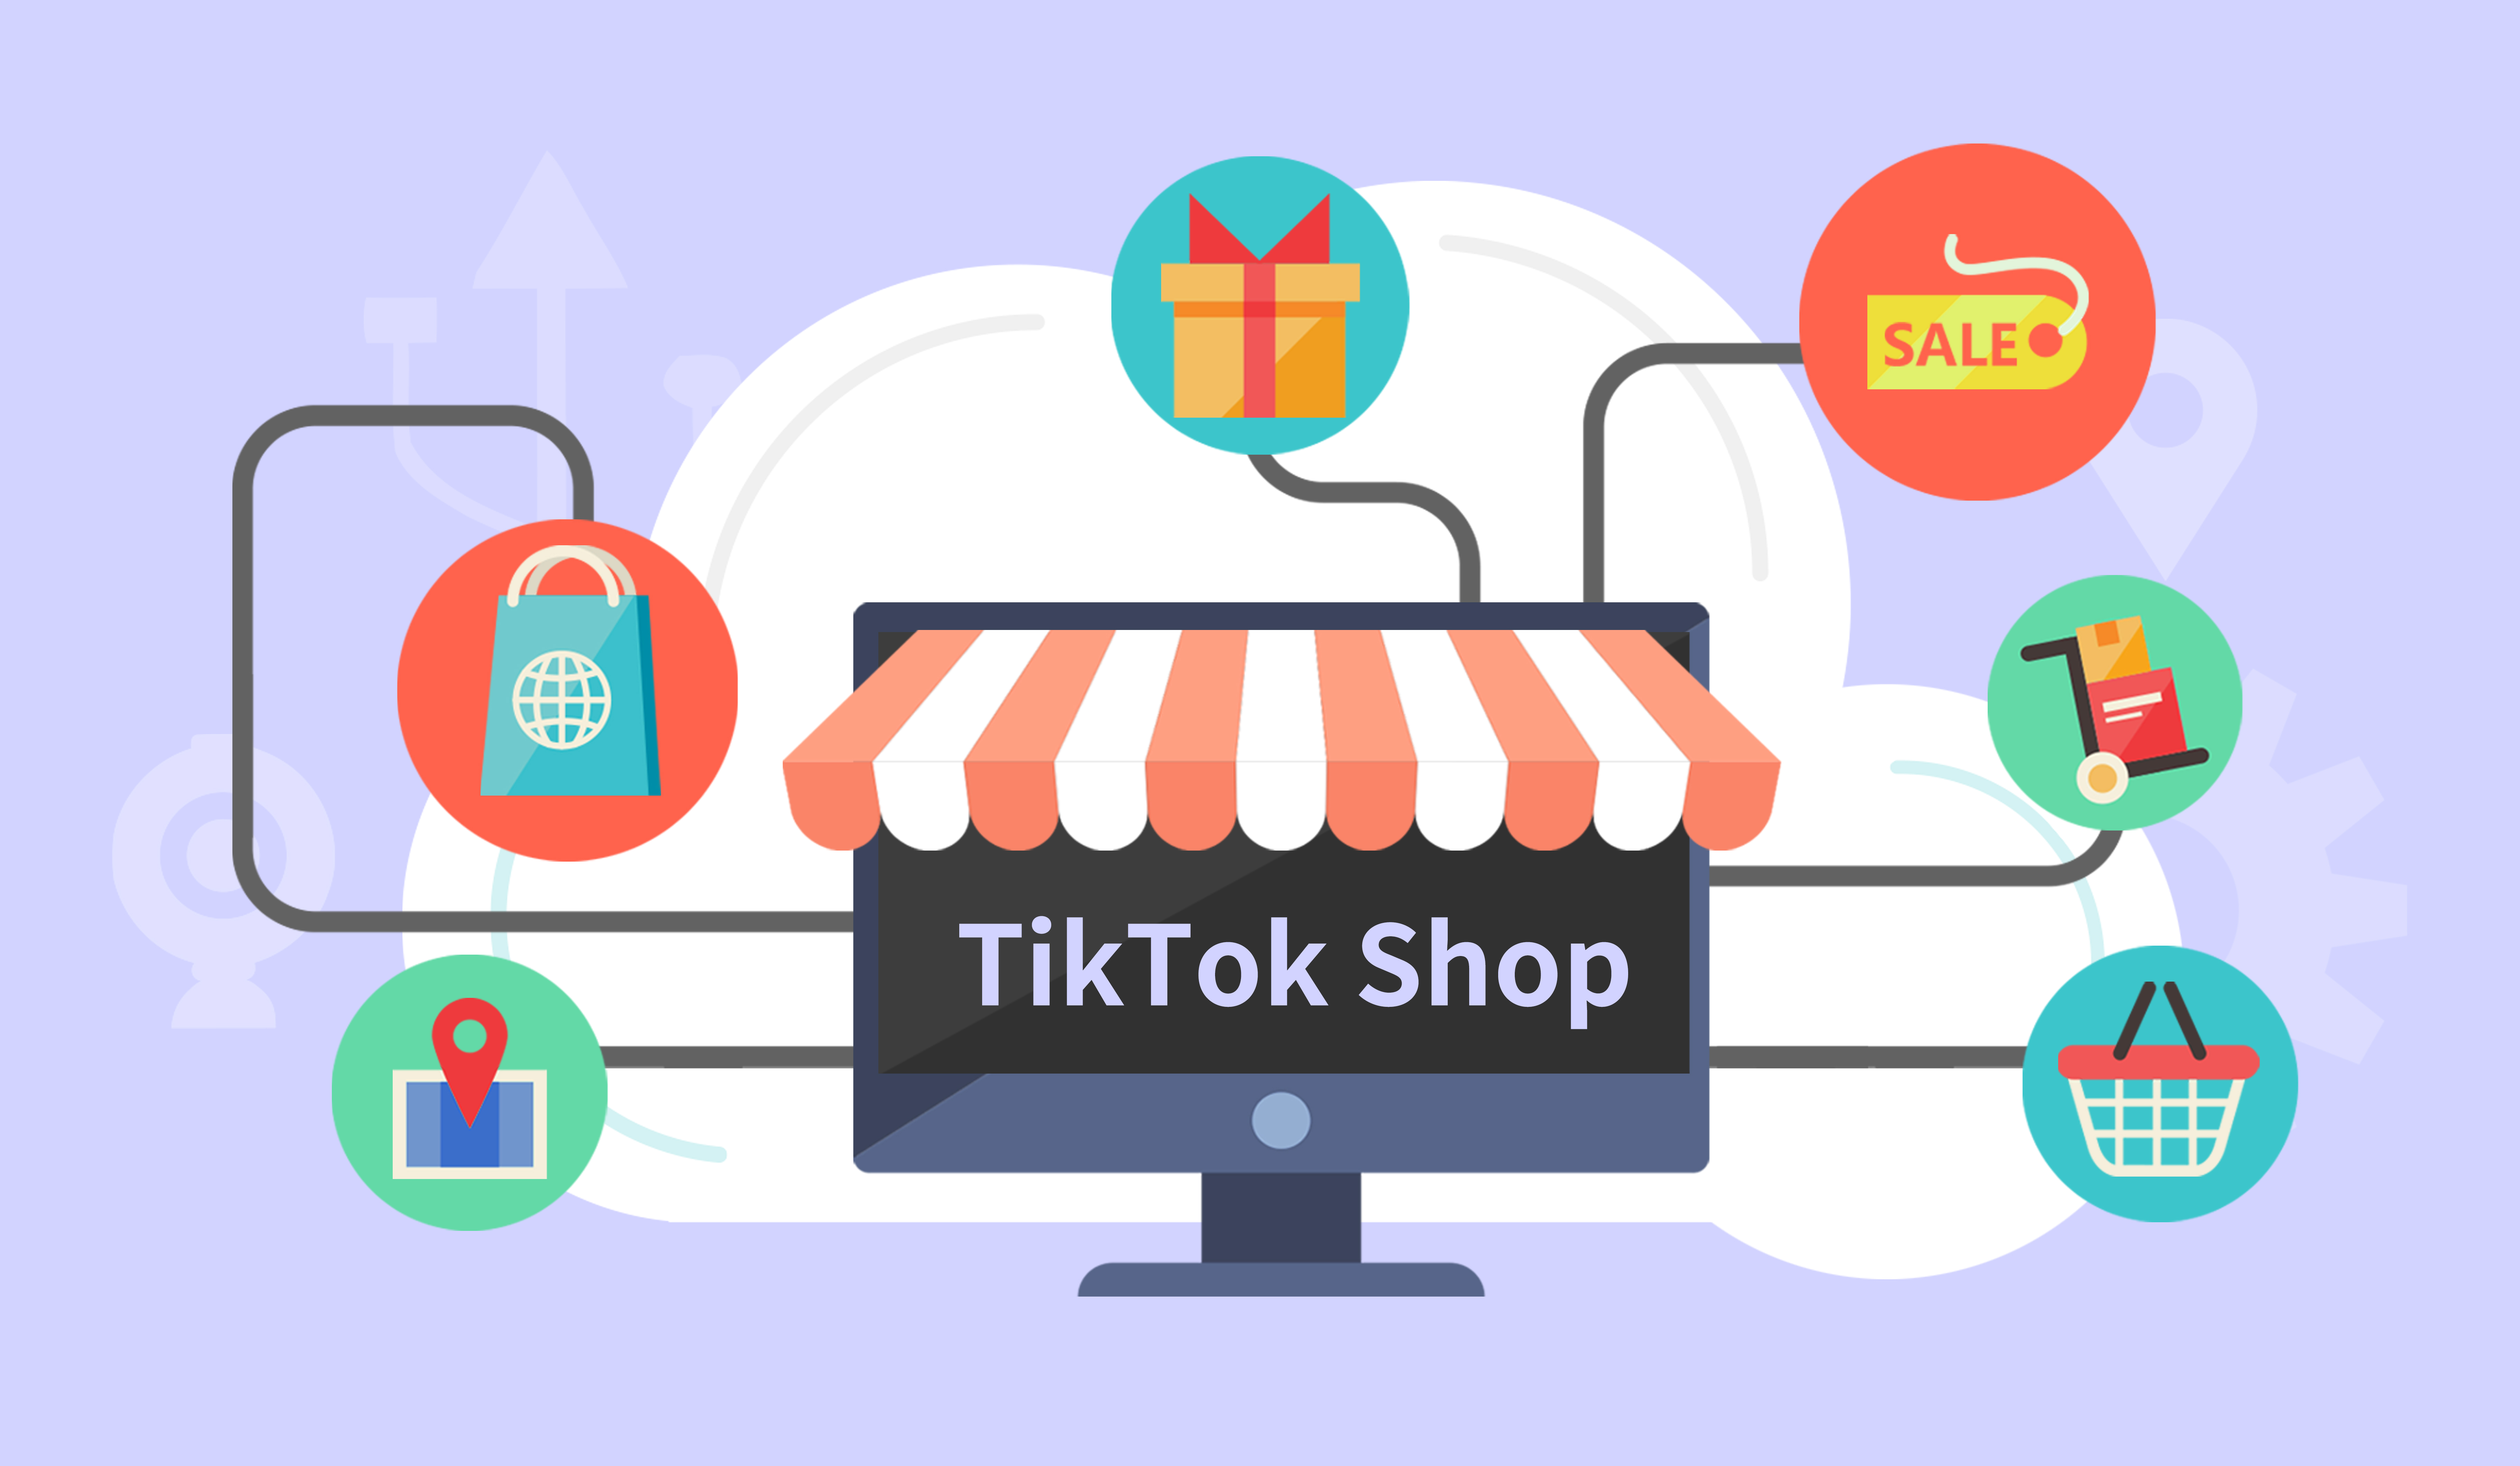 TikTok Shop菲律宾本土店发布假期SLA延长政策